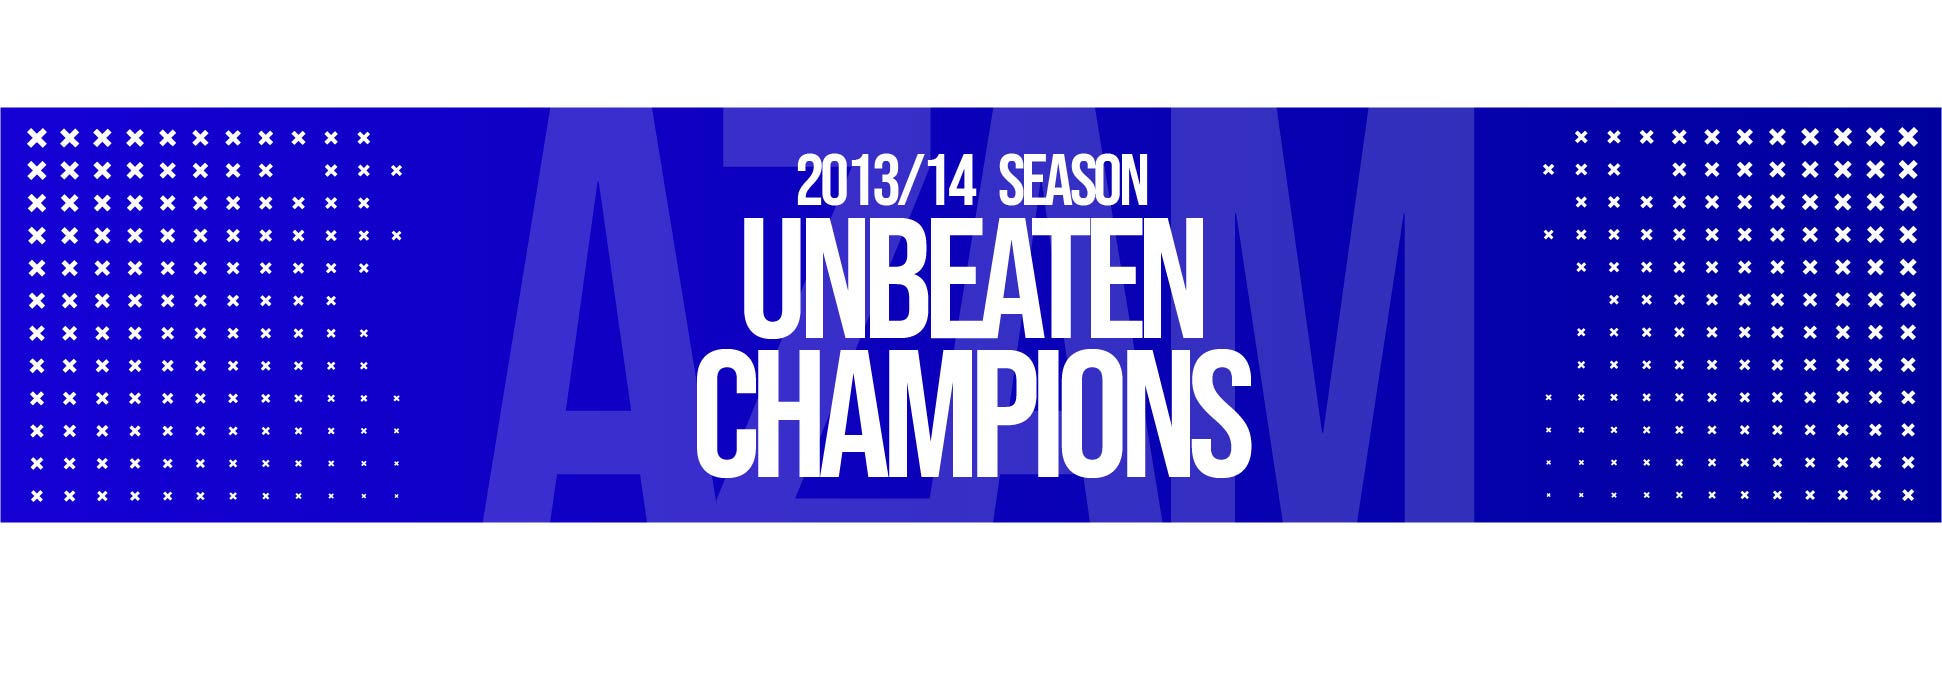 unbeaten 2013/14